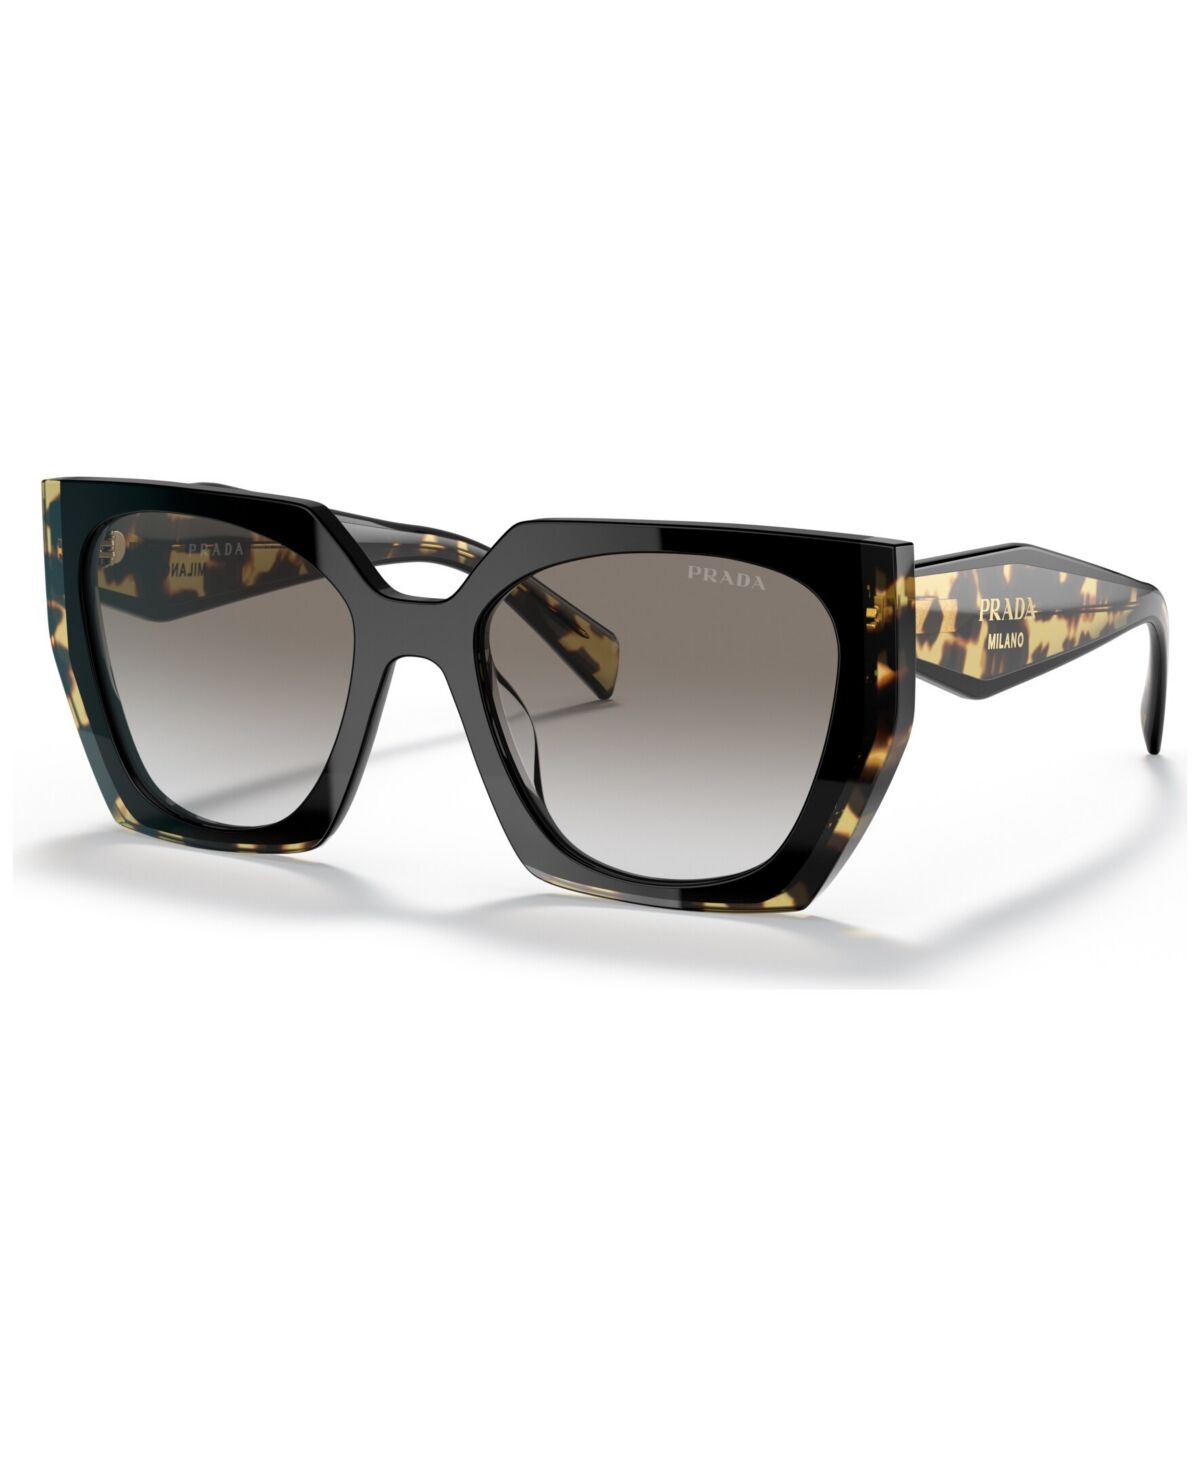 Prada Women's Sunglasses, Pr 15WS - Black, Medium Tortoise